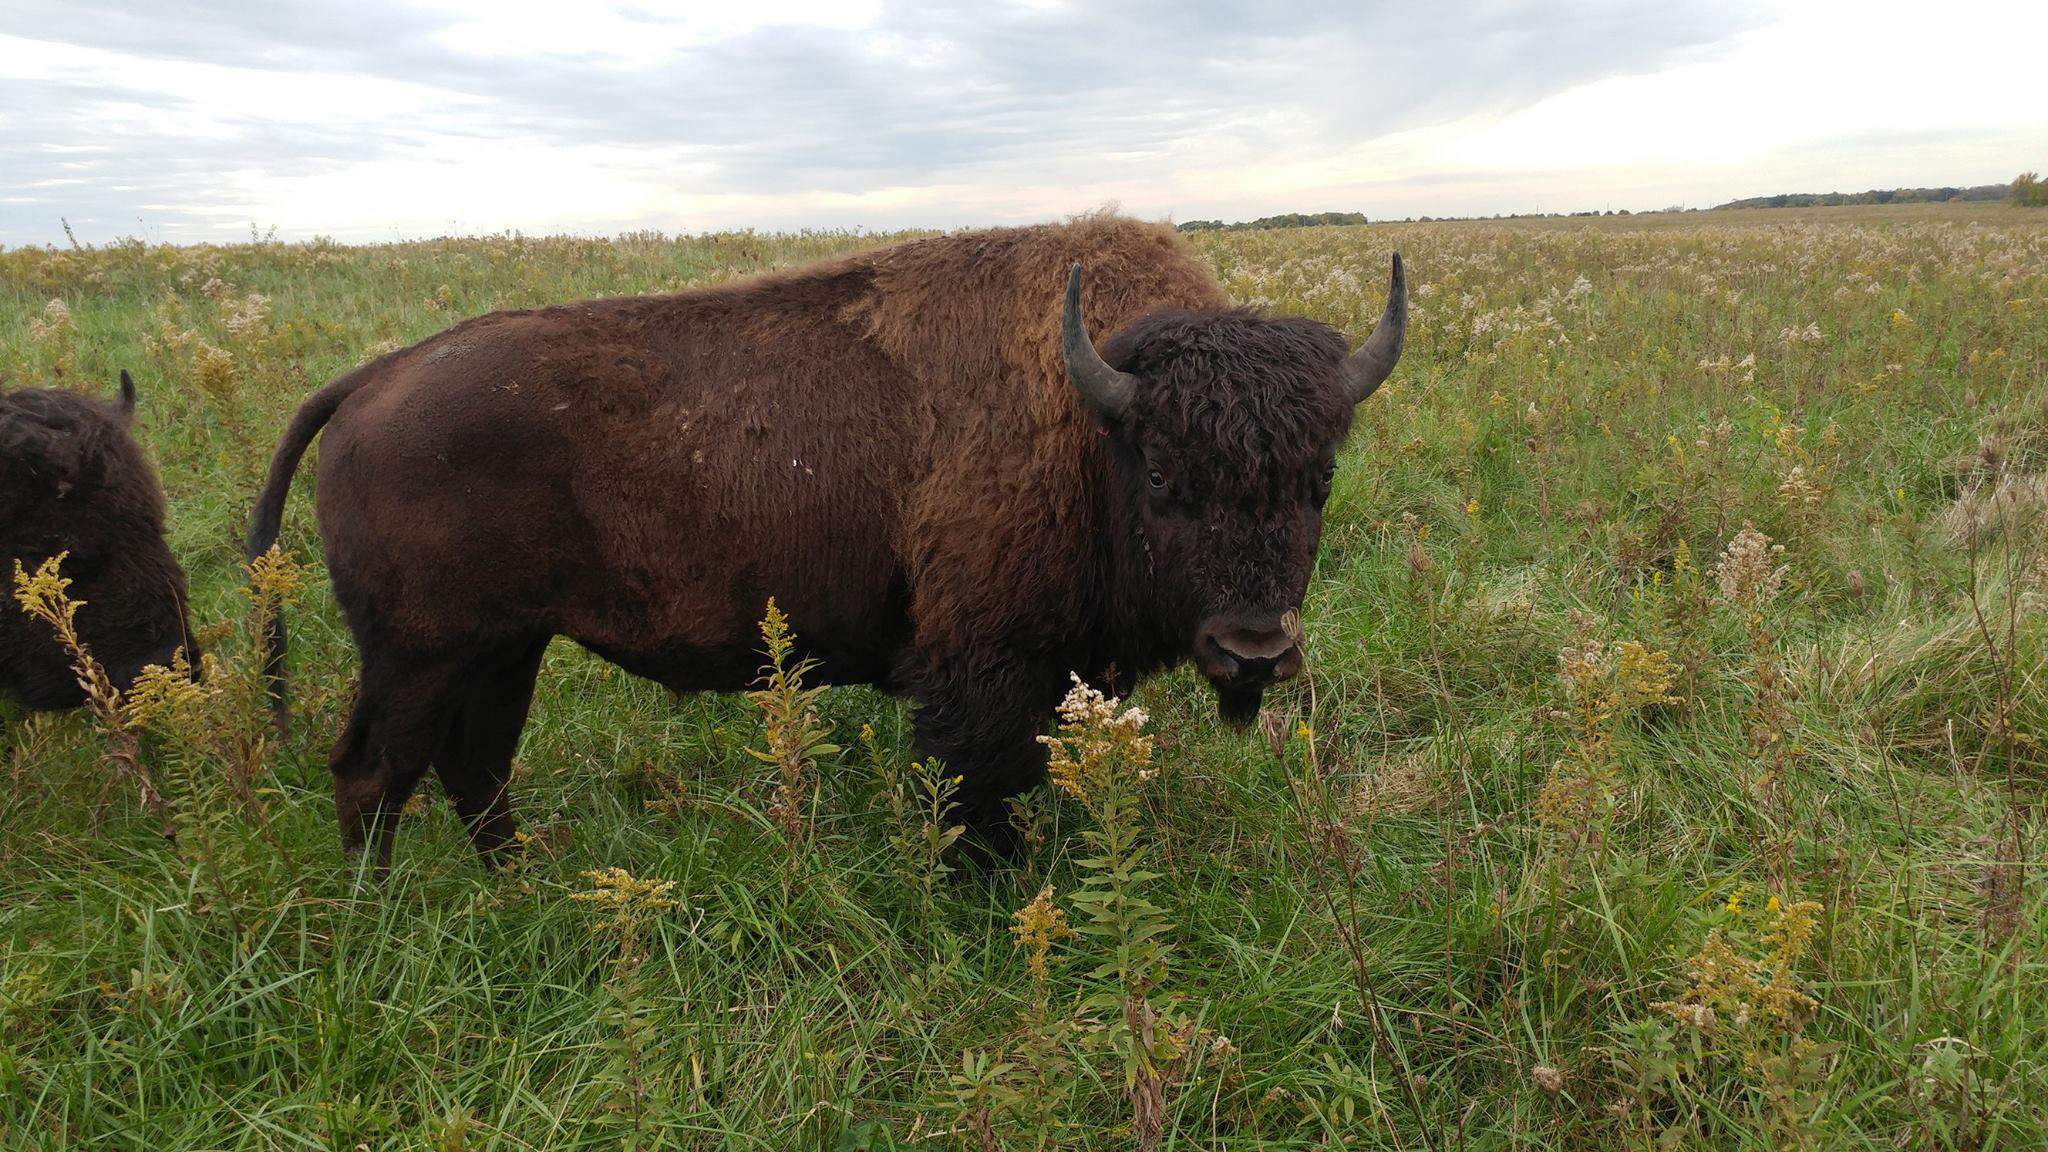 A bison standing on prairieland